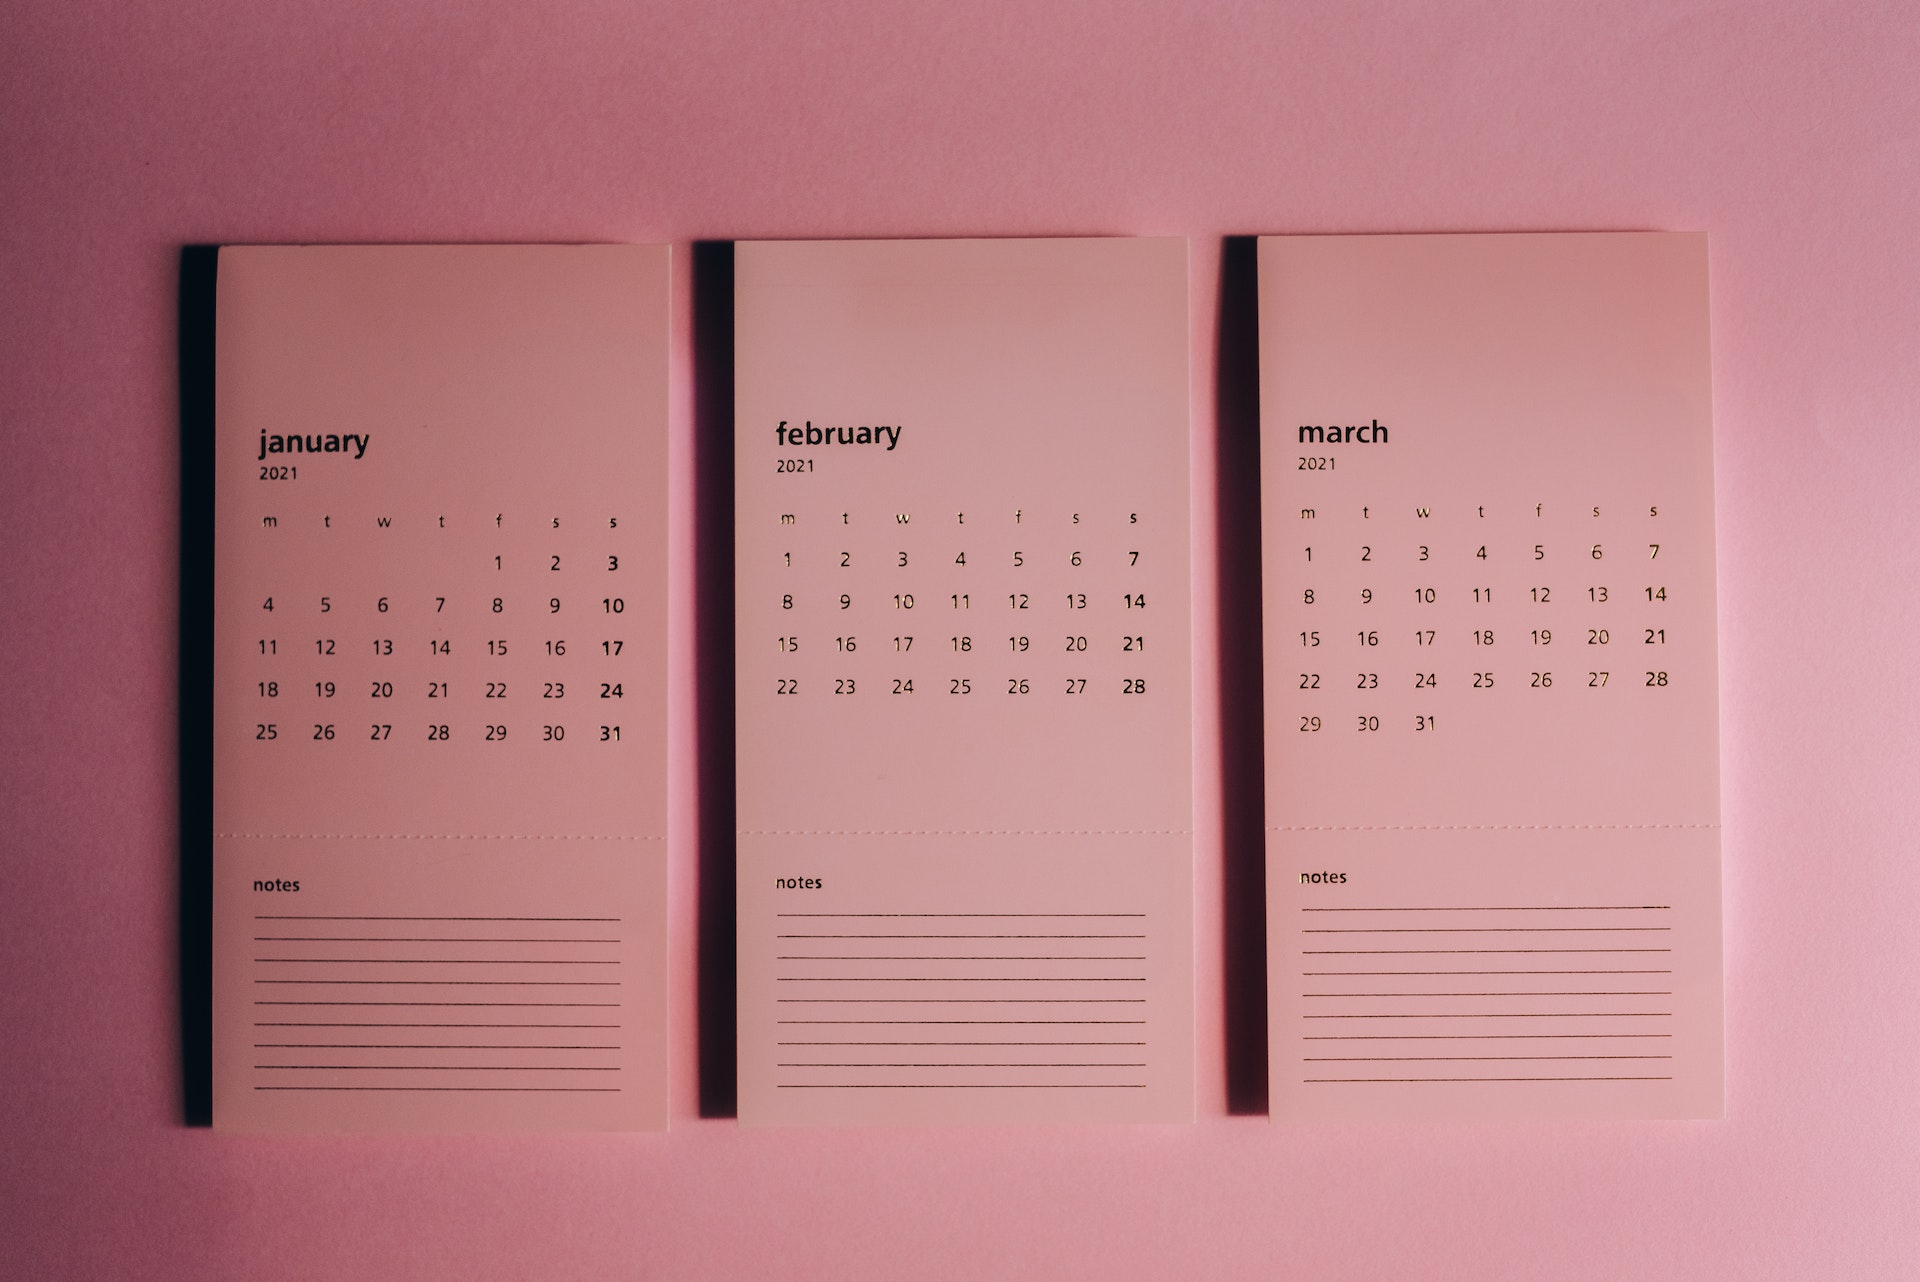 Personnaliser votre espace de travail avec un calendrier photo de bureau